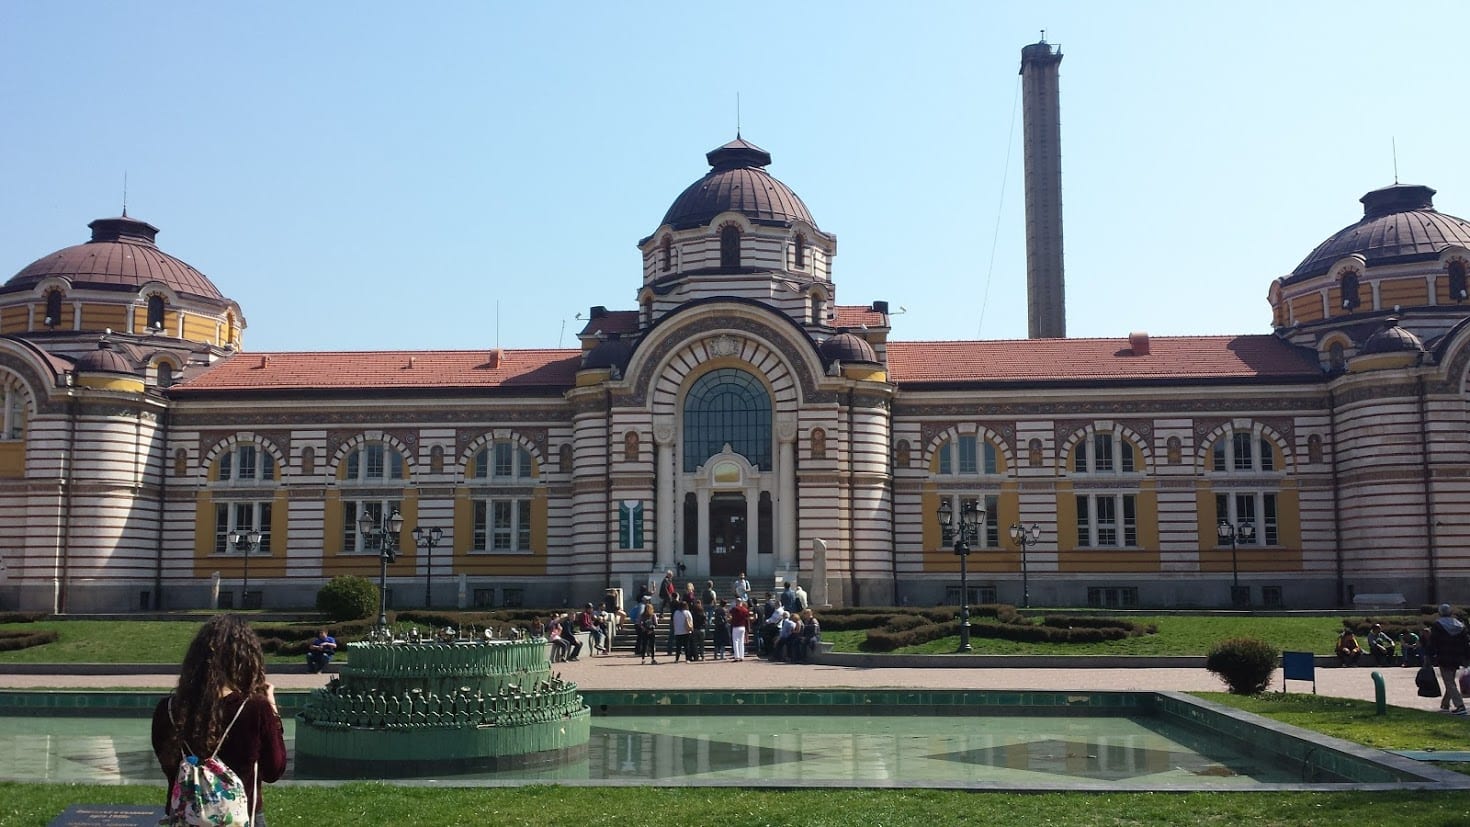 Sofia history museum